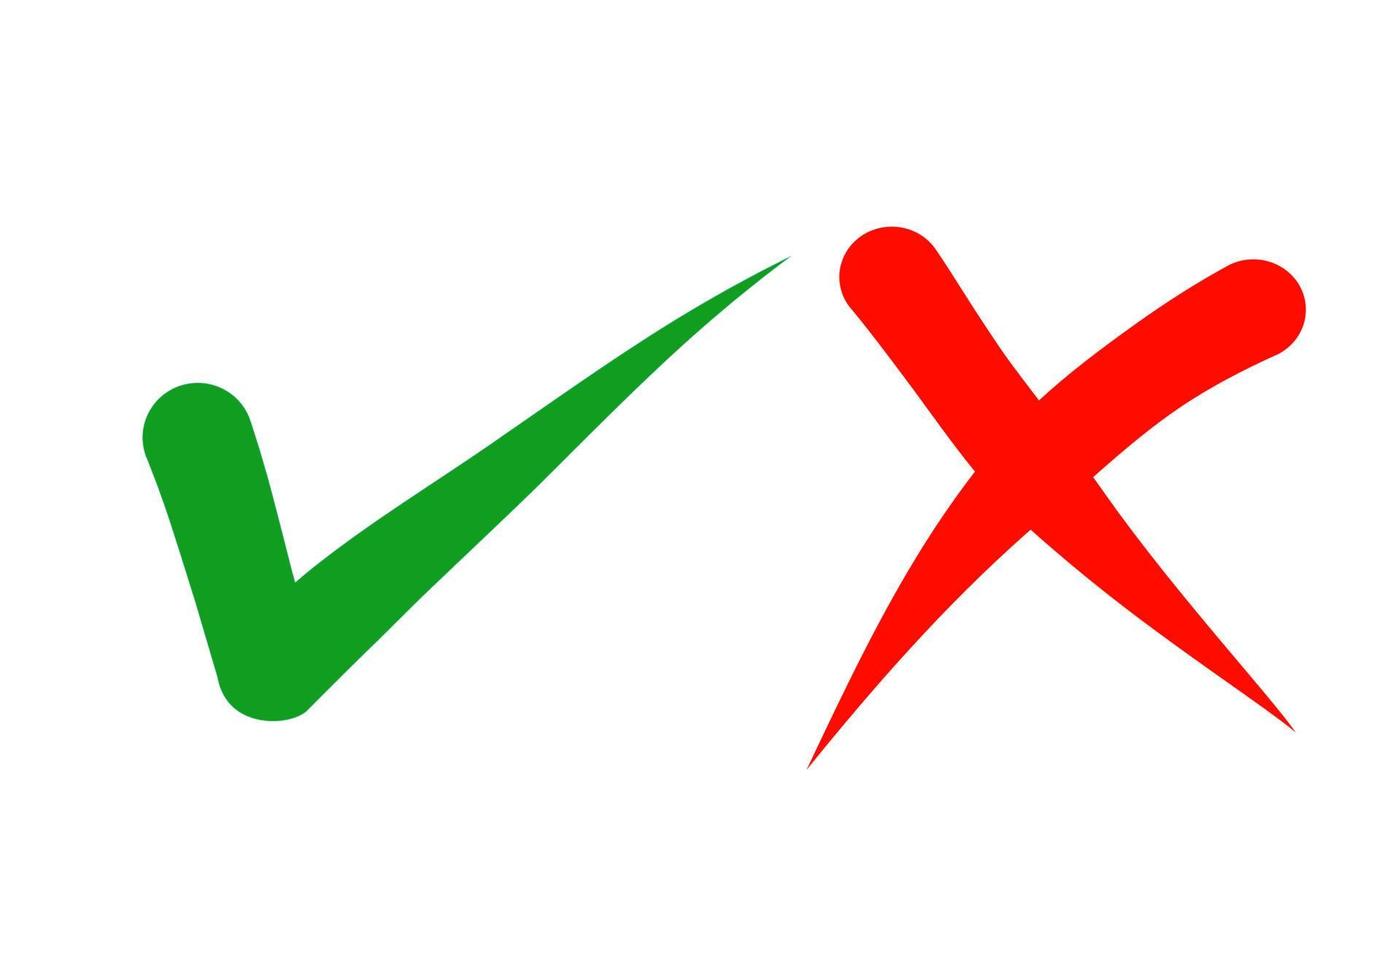 mão desenhada de marca de seleção verde e cruz vermelha isolada no fundo branco. ícone certo e errado. ilustração vetorial. vetor